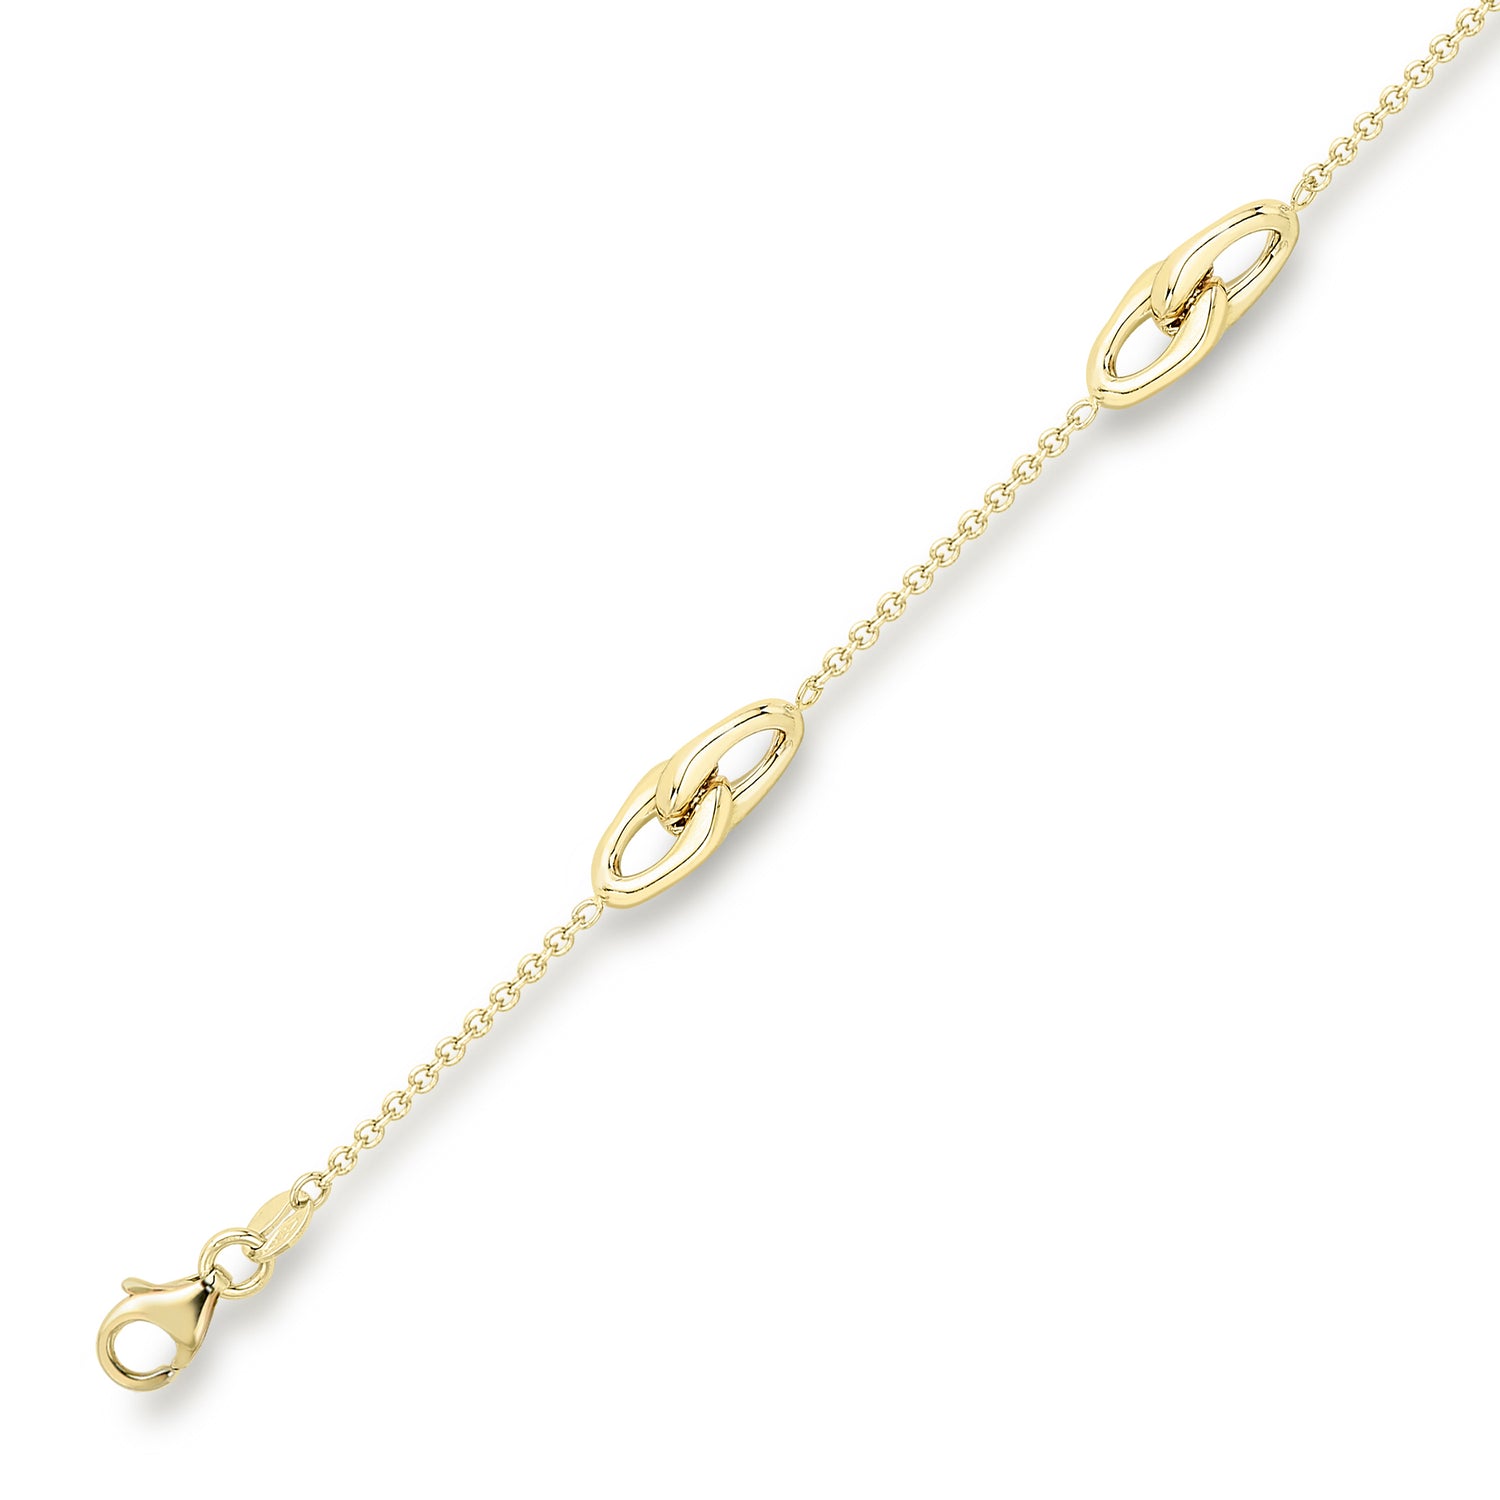 9ct. Yellow Gold Polished Interlocking Motif Bracelet